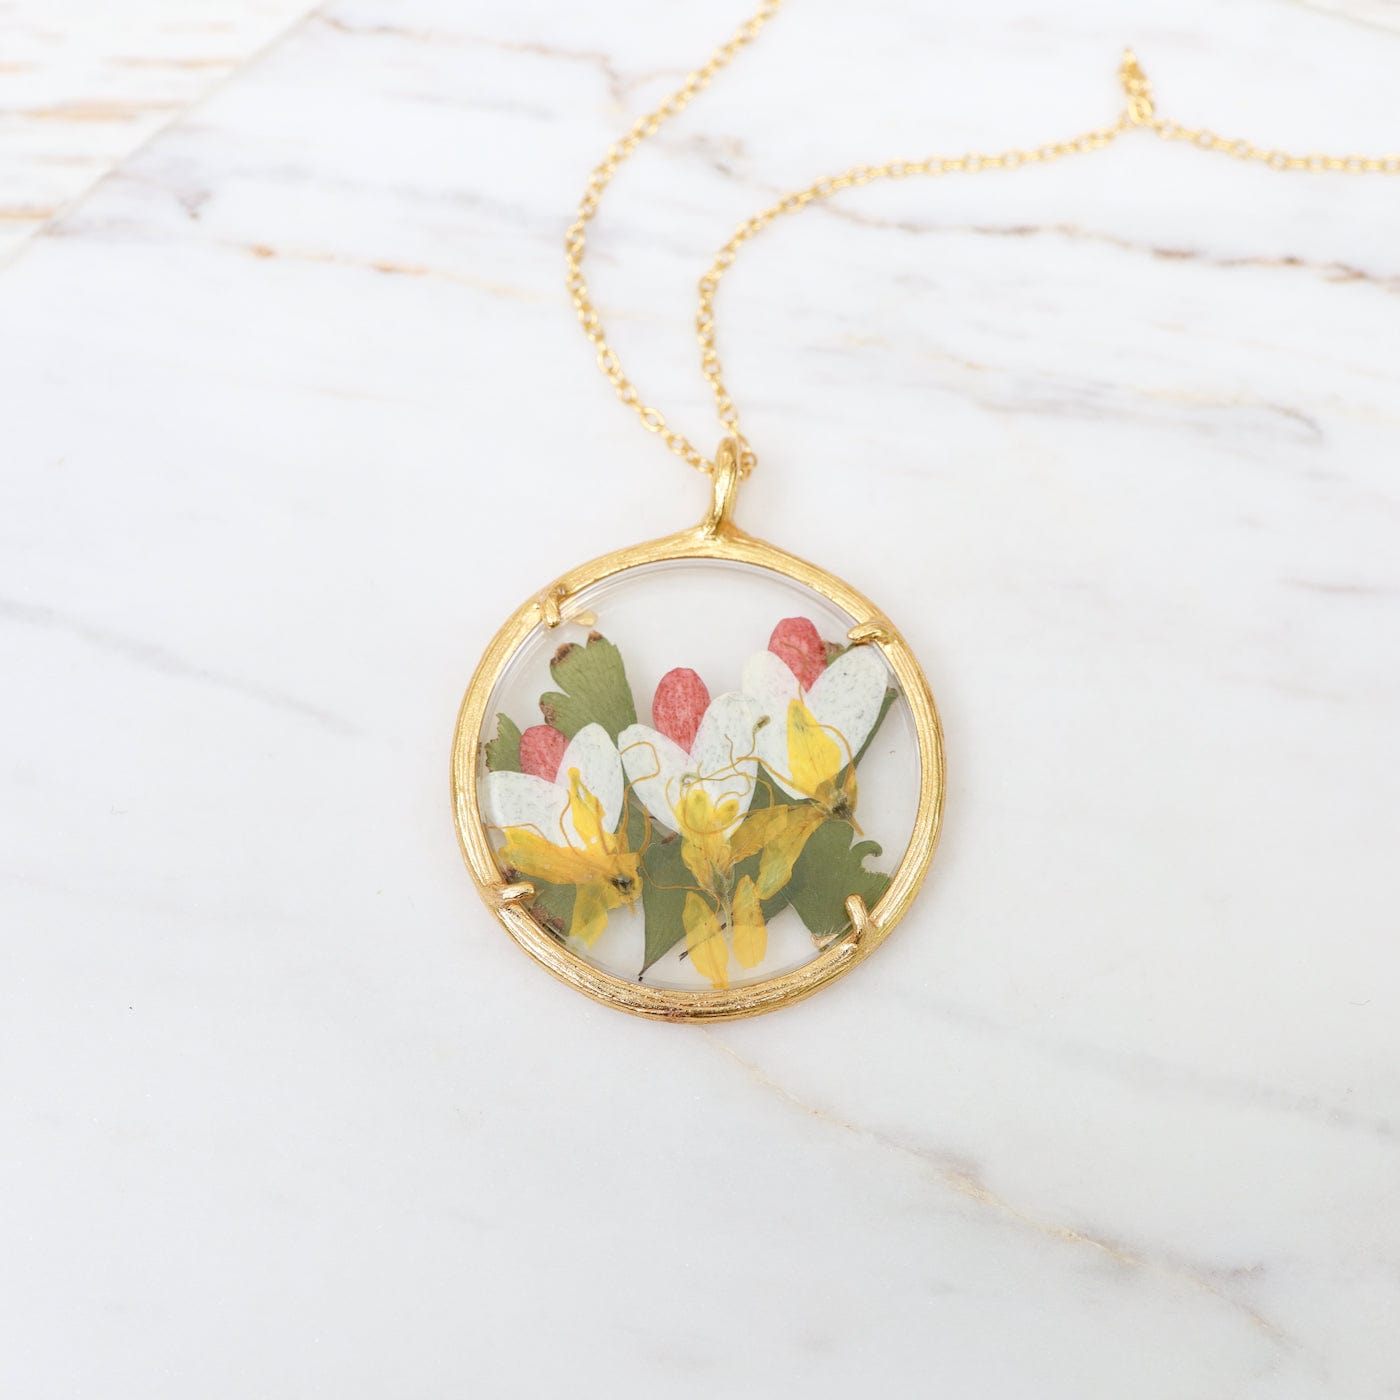 NKL-VRM Fairy Blooms Large Glass Botanical Necklace - 18K Gold Vermeil